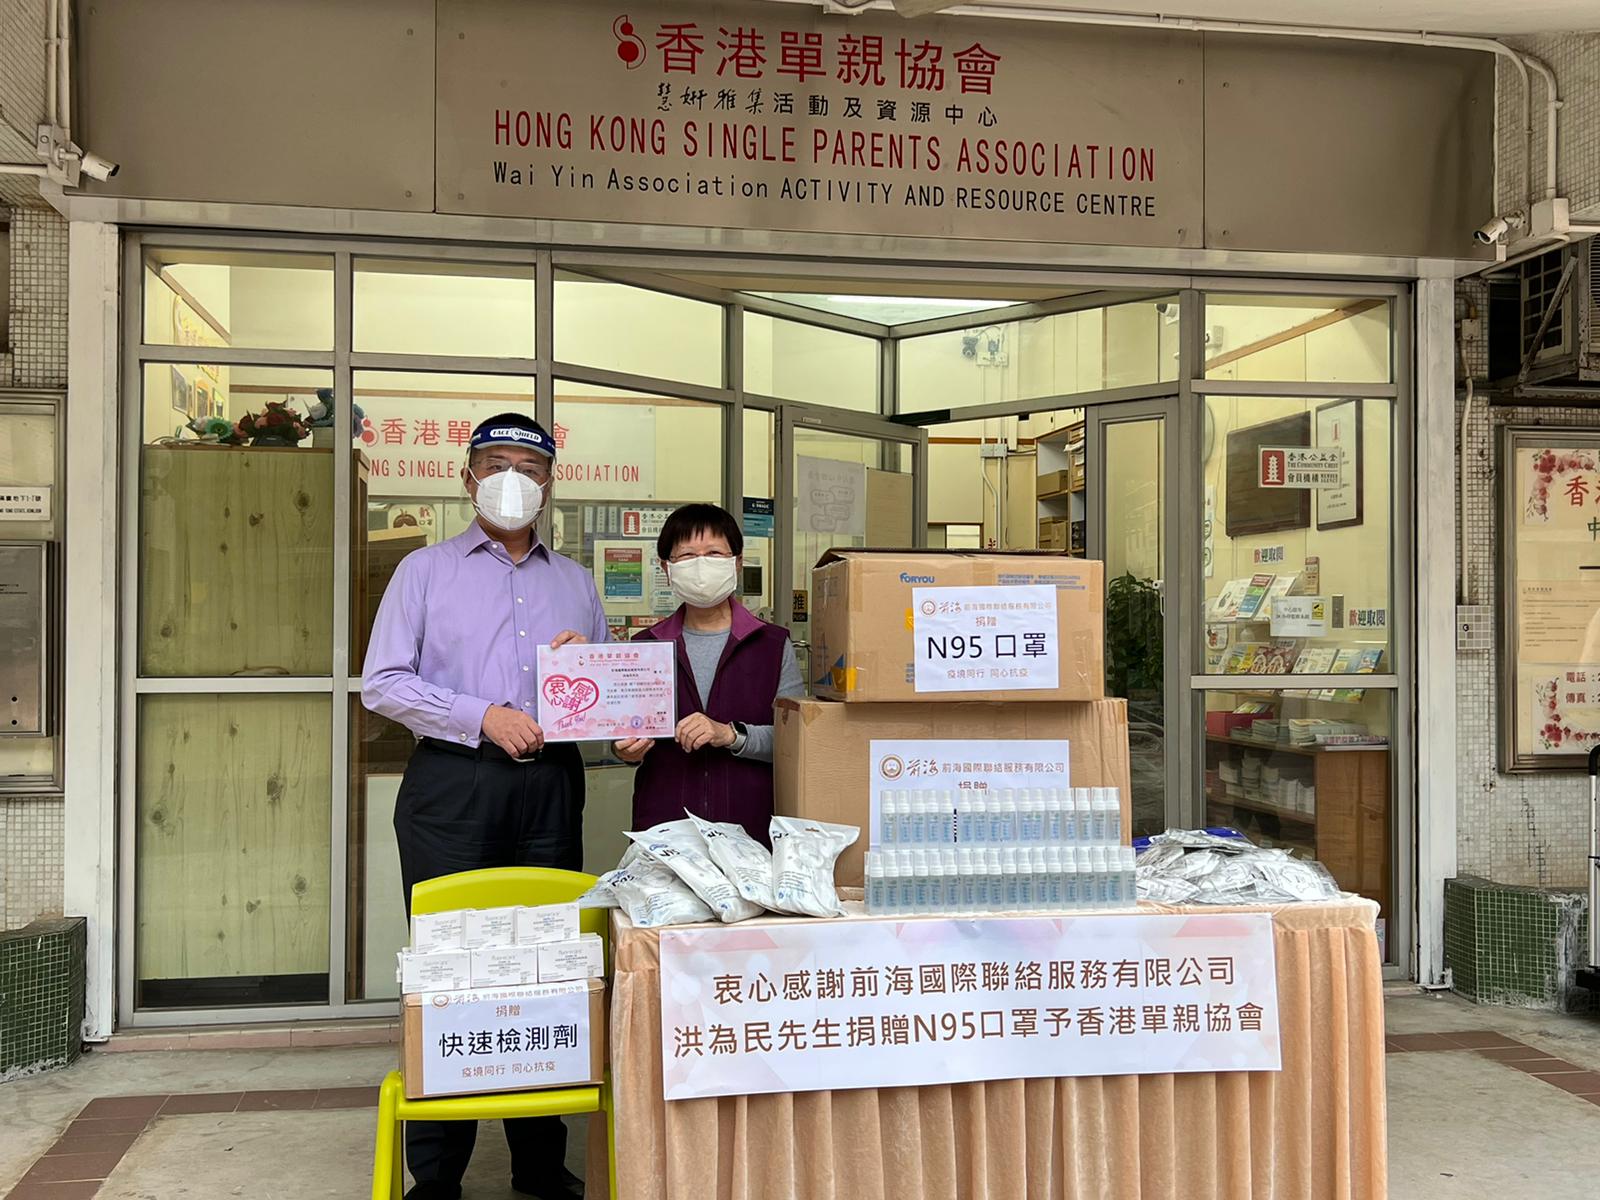 2022年3月21日向香港單親協會送出抗疫物資